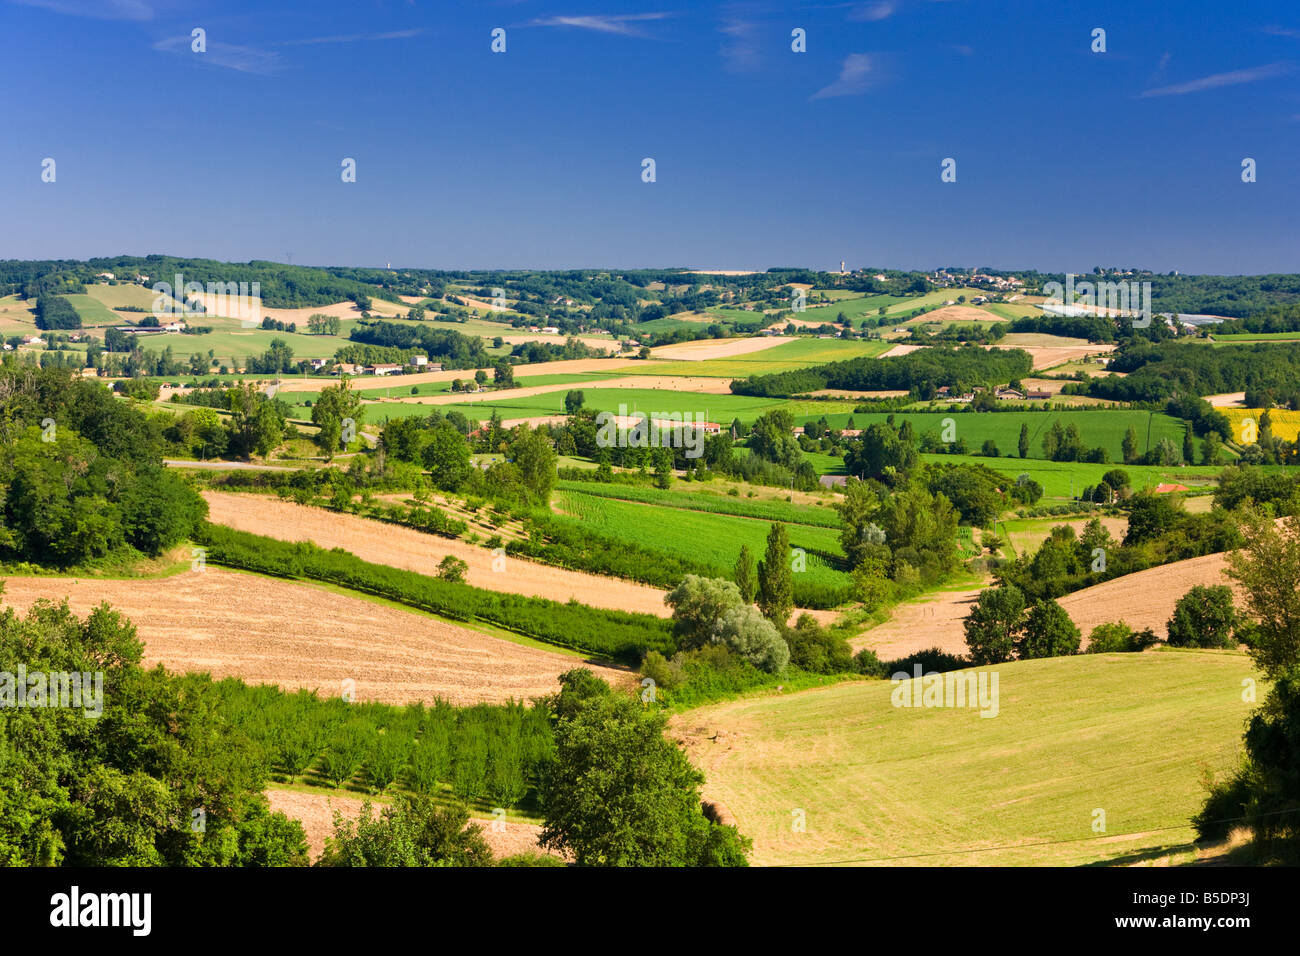 The landscape of Tarn et Garonne, France Europe in summer Stock Photo